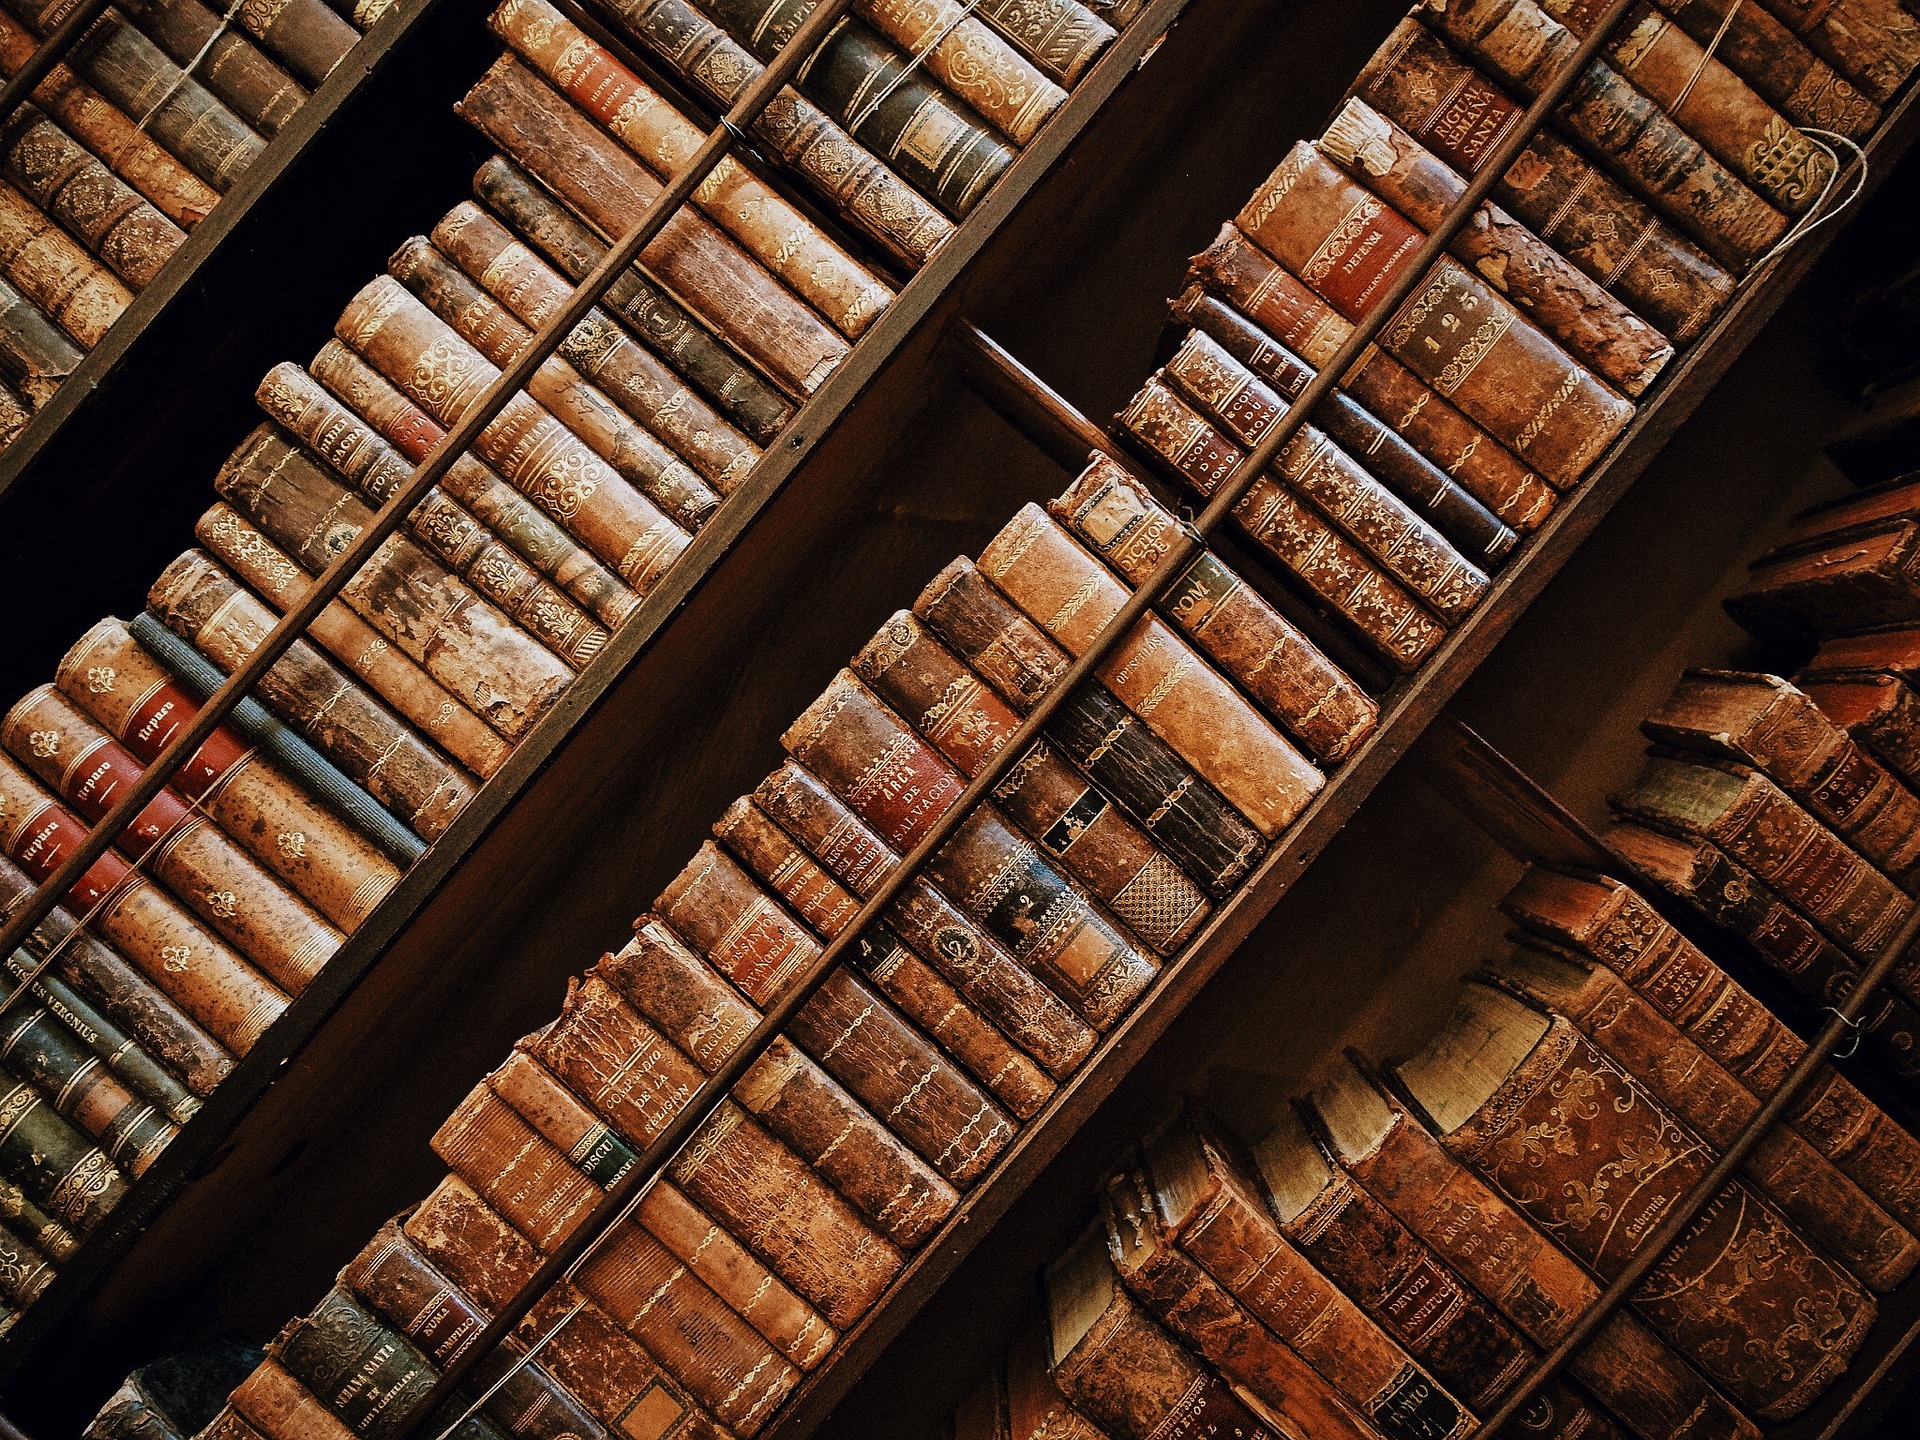 Simitless aide les bibliophiles à cataloguer leur collection de livres.